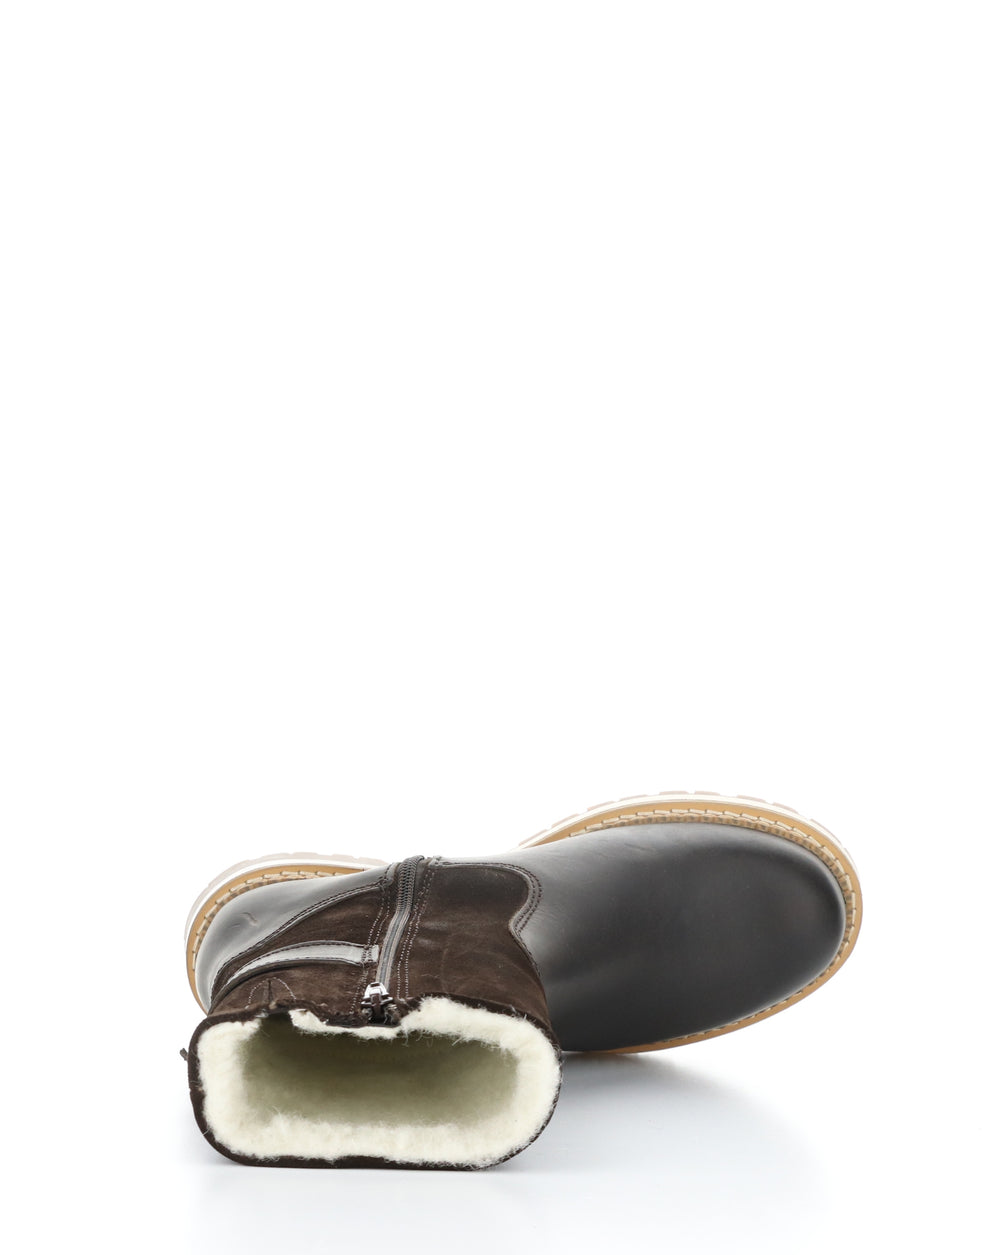 ANNEX DK BROWN/COFFEE Round Toe Boots